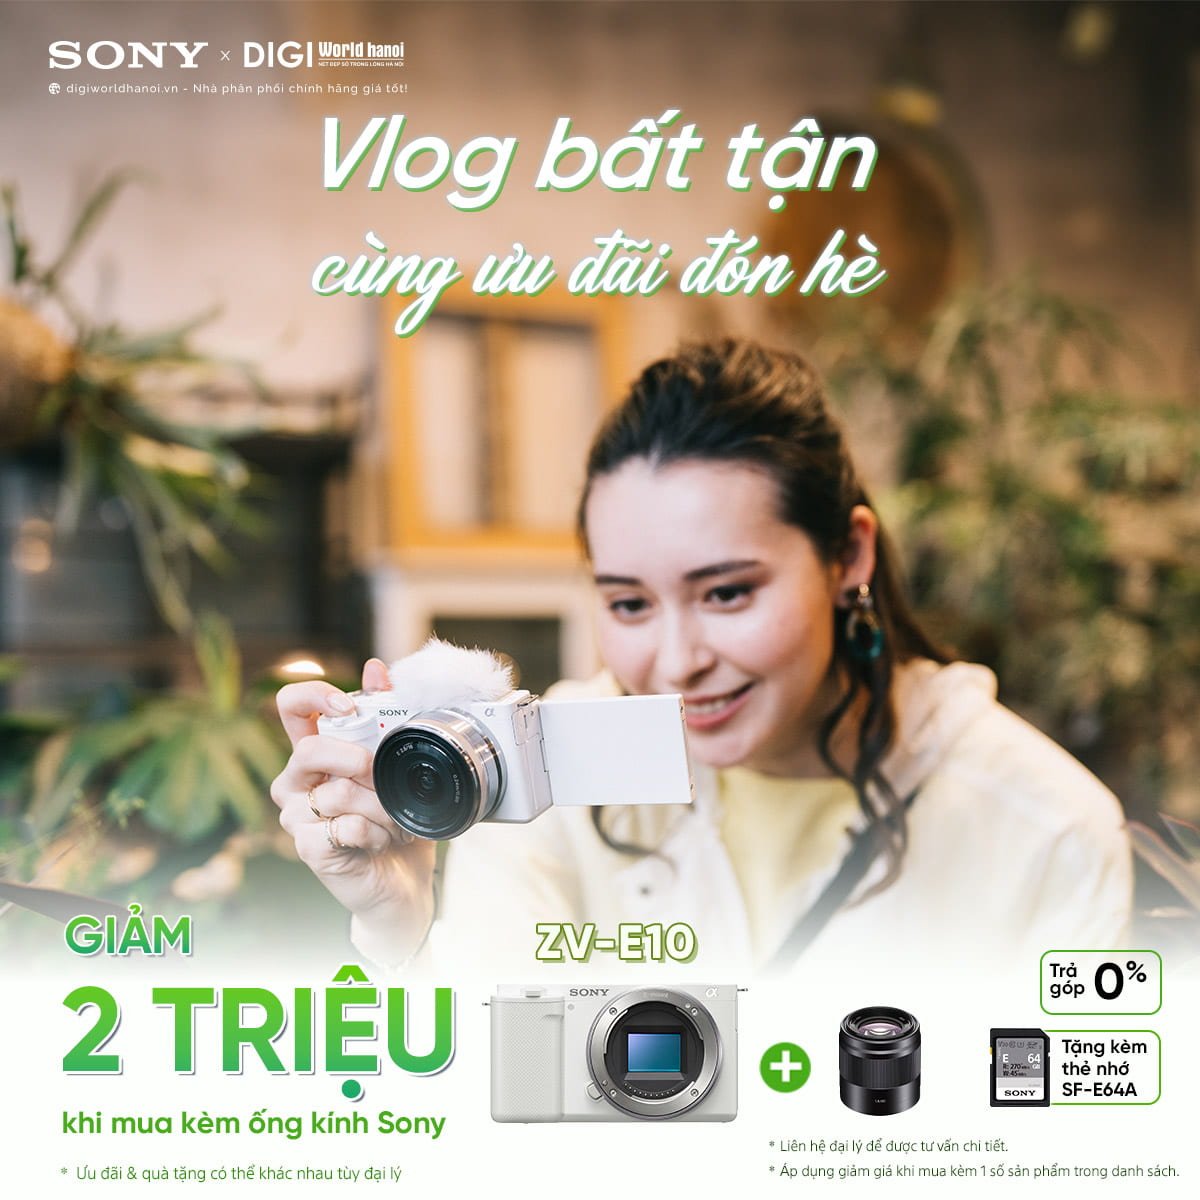 Vlog bất tận cùng ưu đãi đón hè, Sony giảm giá các sản phẩm máy ảnh, ống kính tại Digiworld Hà Nội